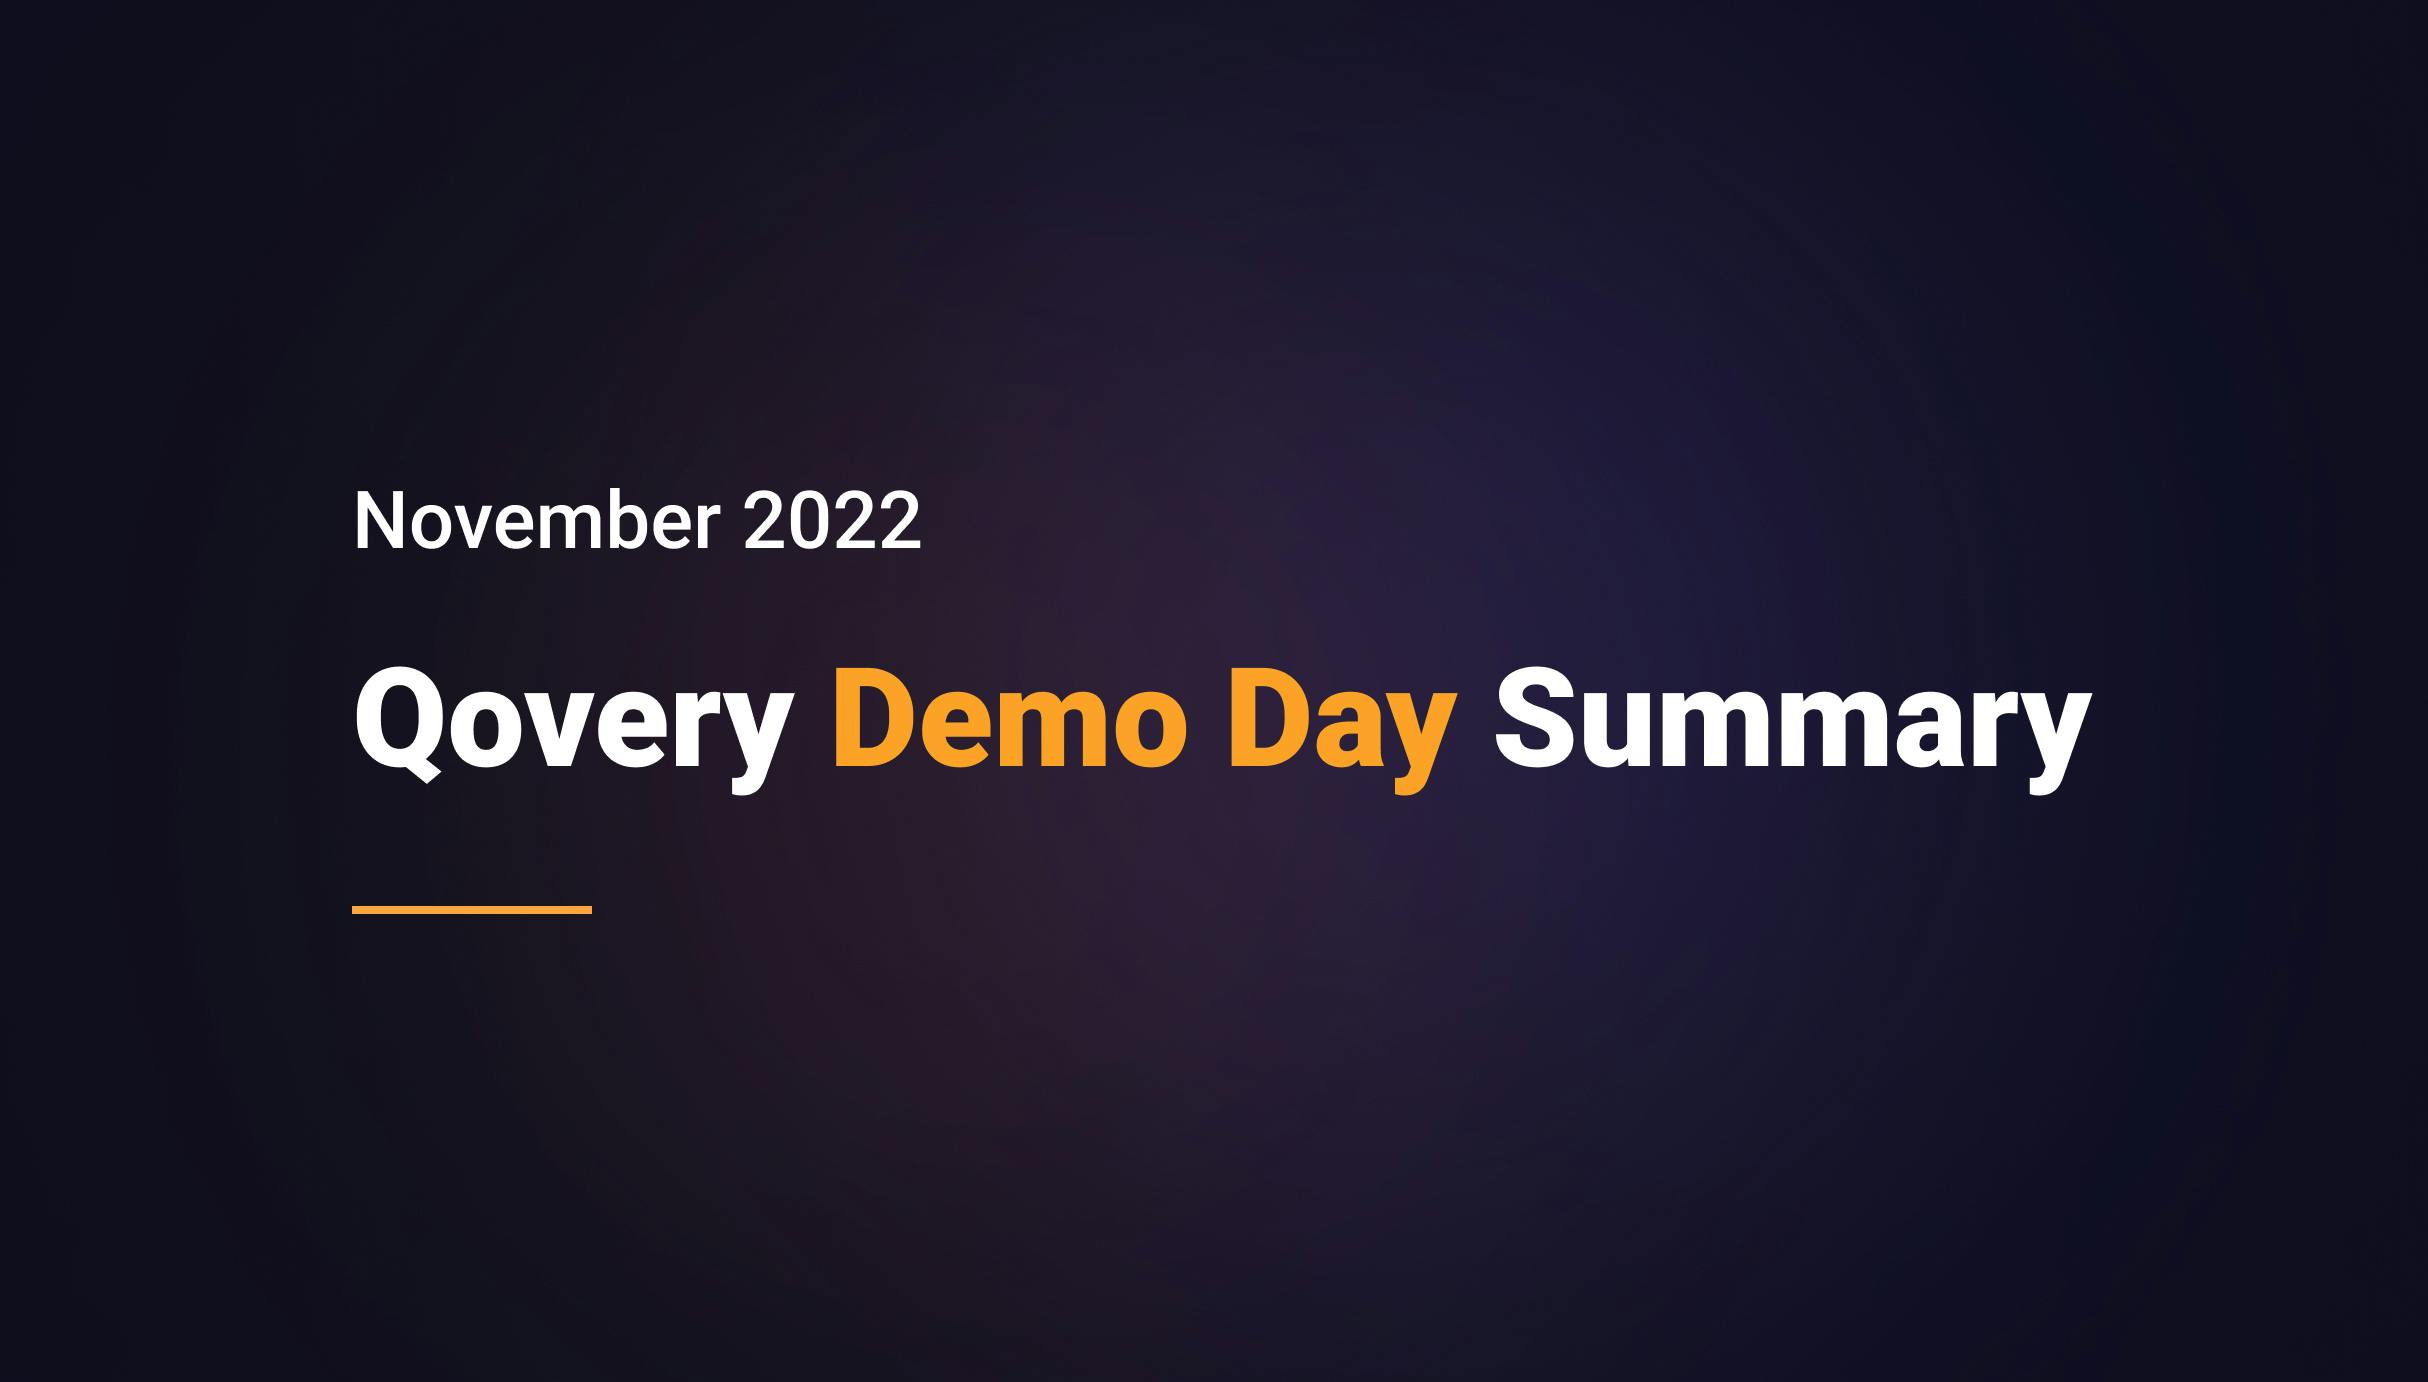 Qovery Demo Day Summary - November 2022 - Qovery